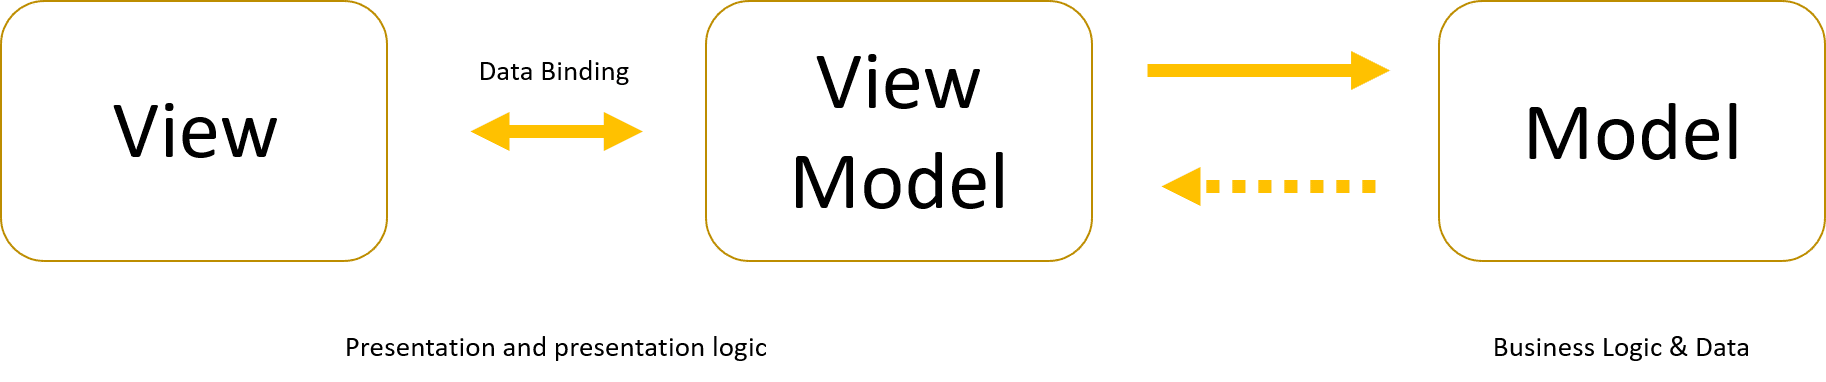 Model-view-view-model (MVVM)